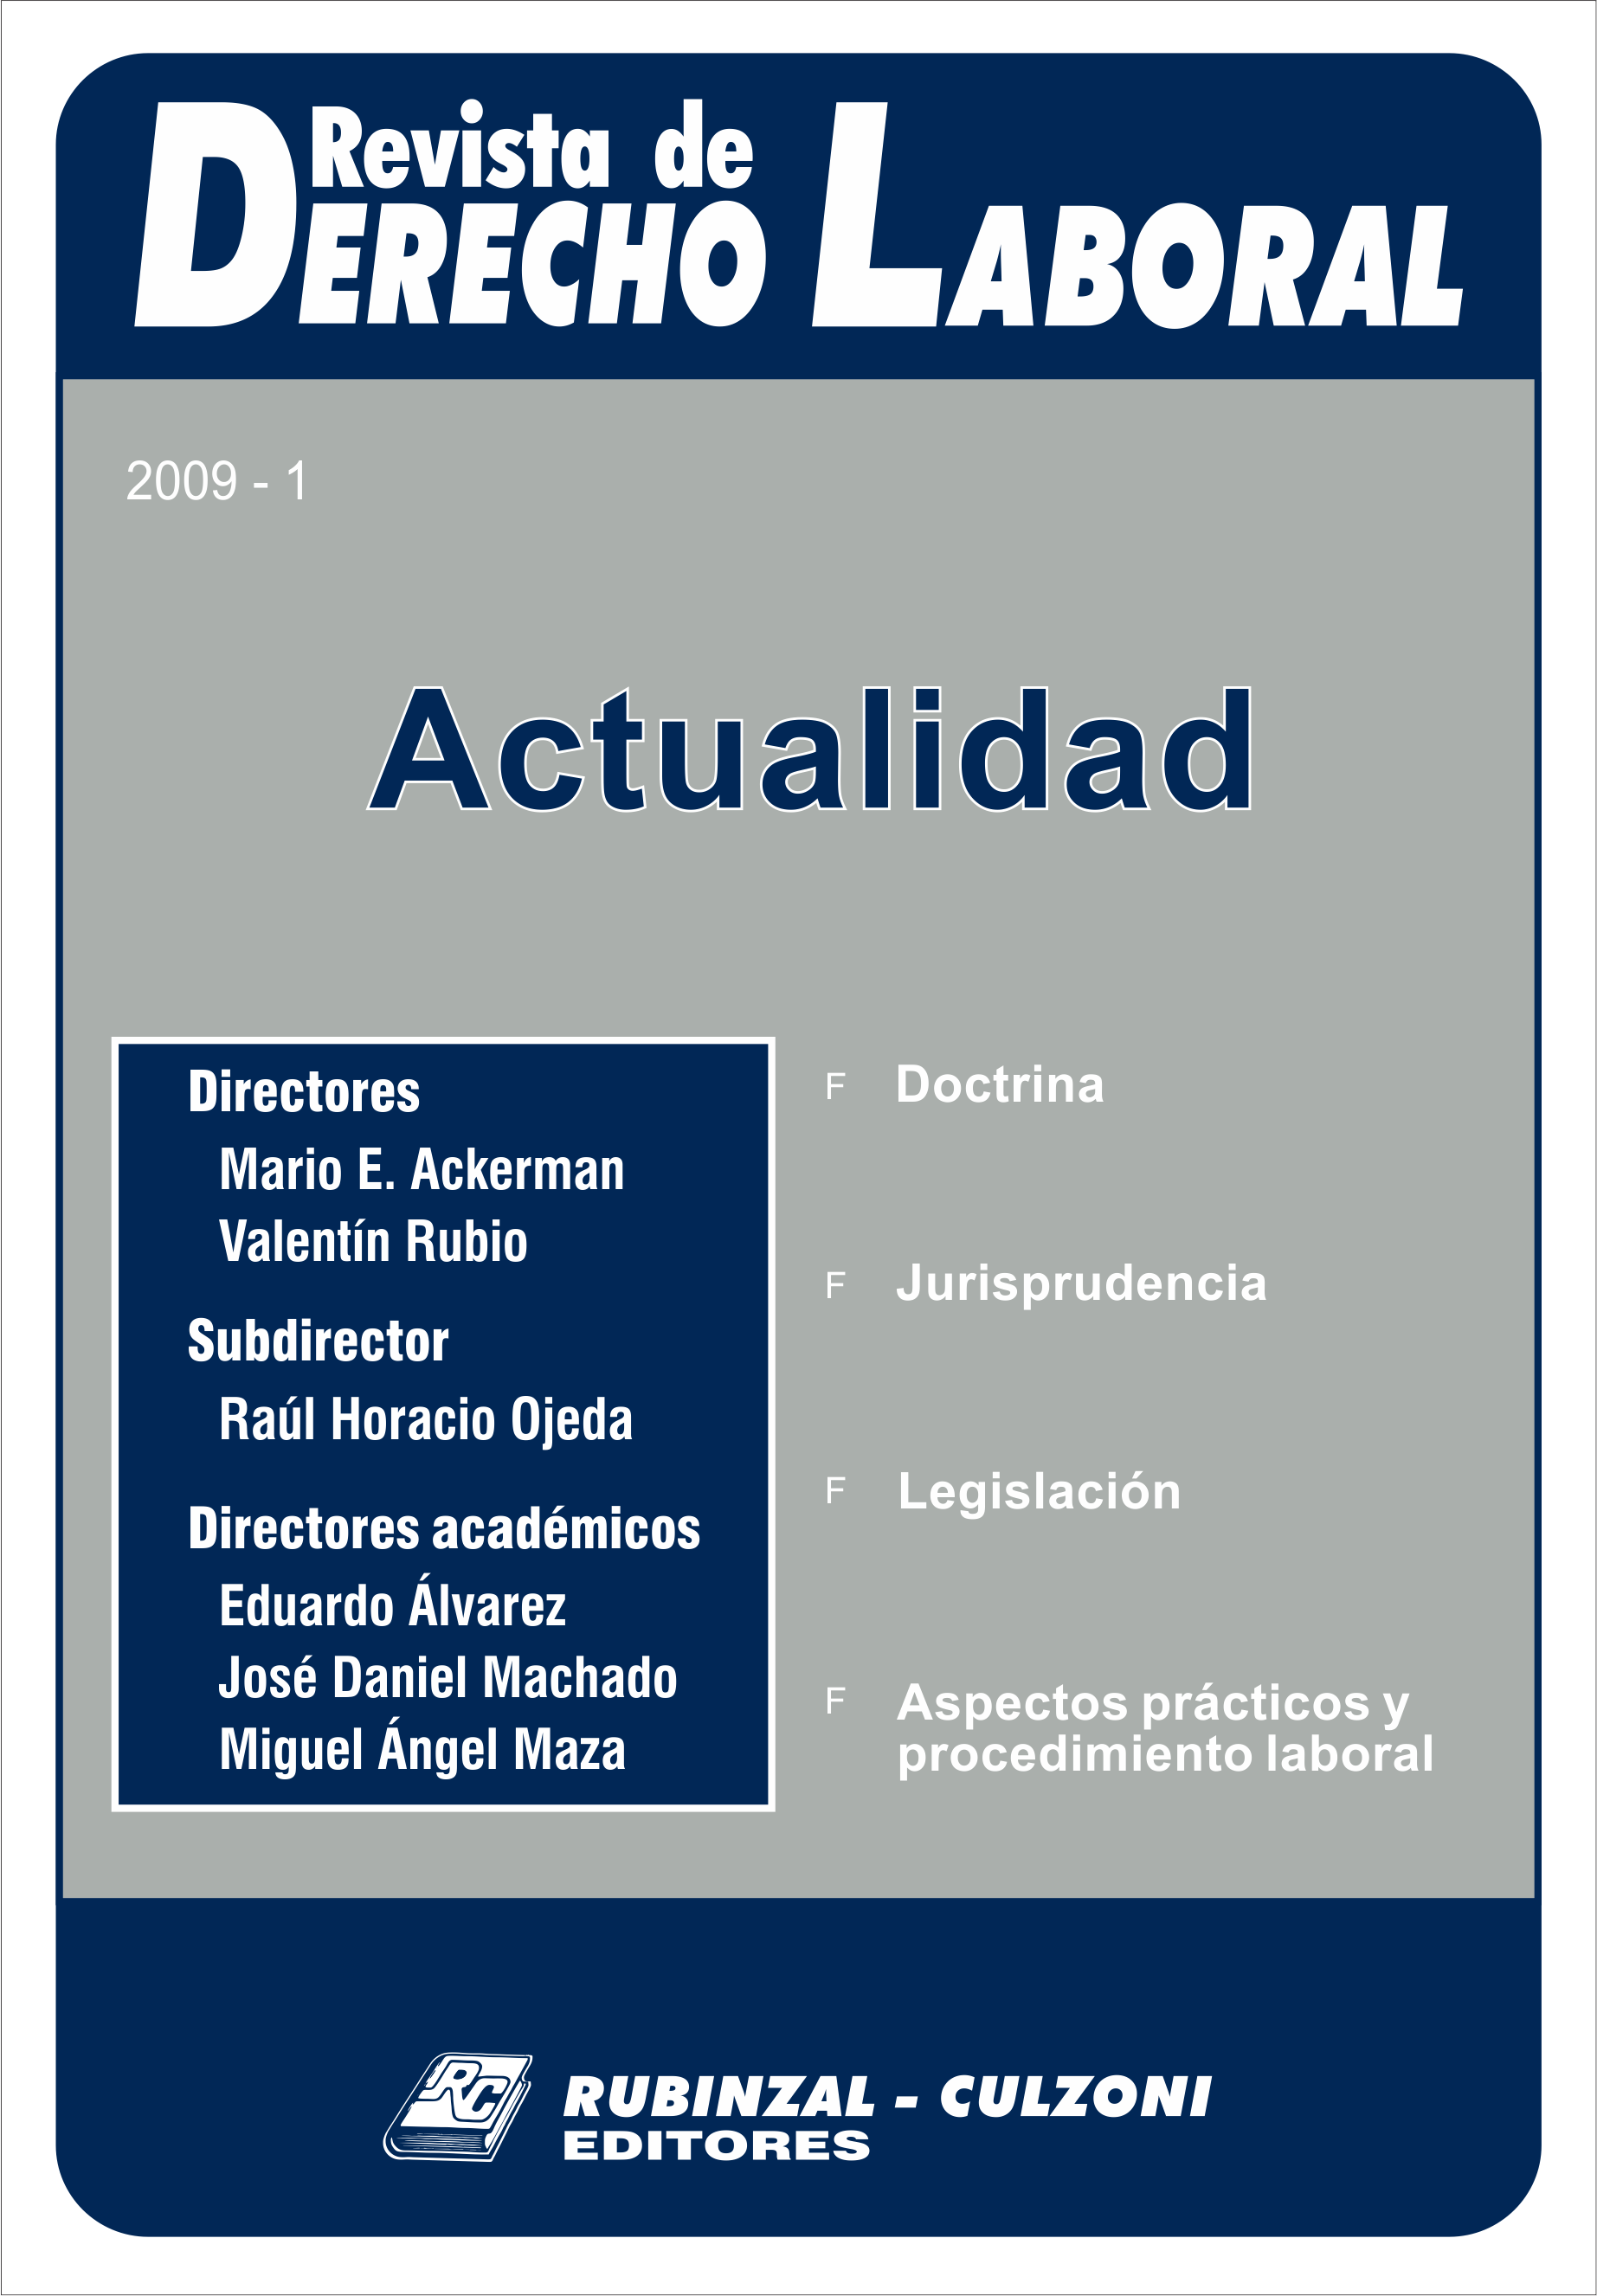  Actualidad - Año 2009 - 1. [2009-1]